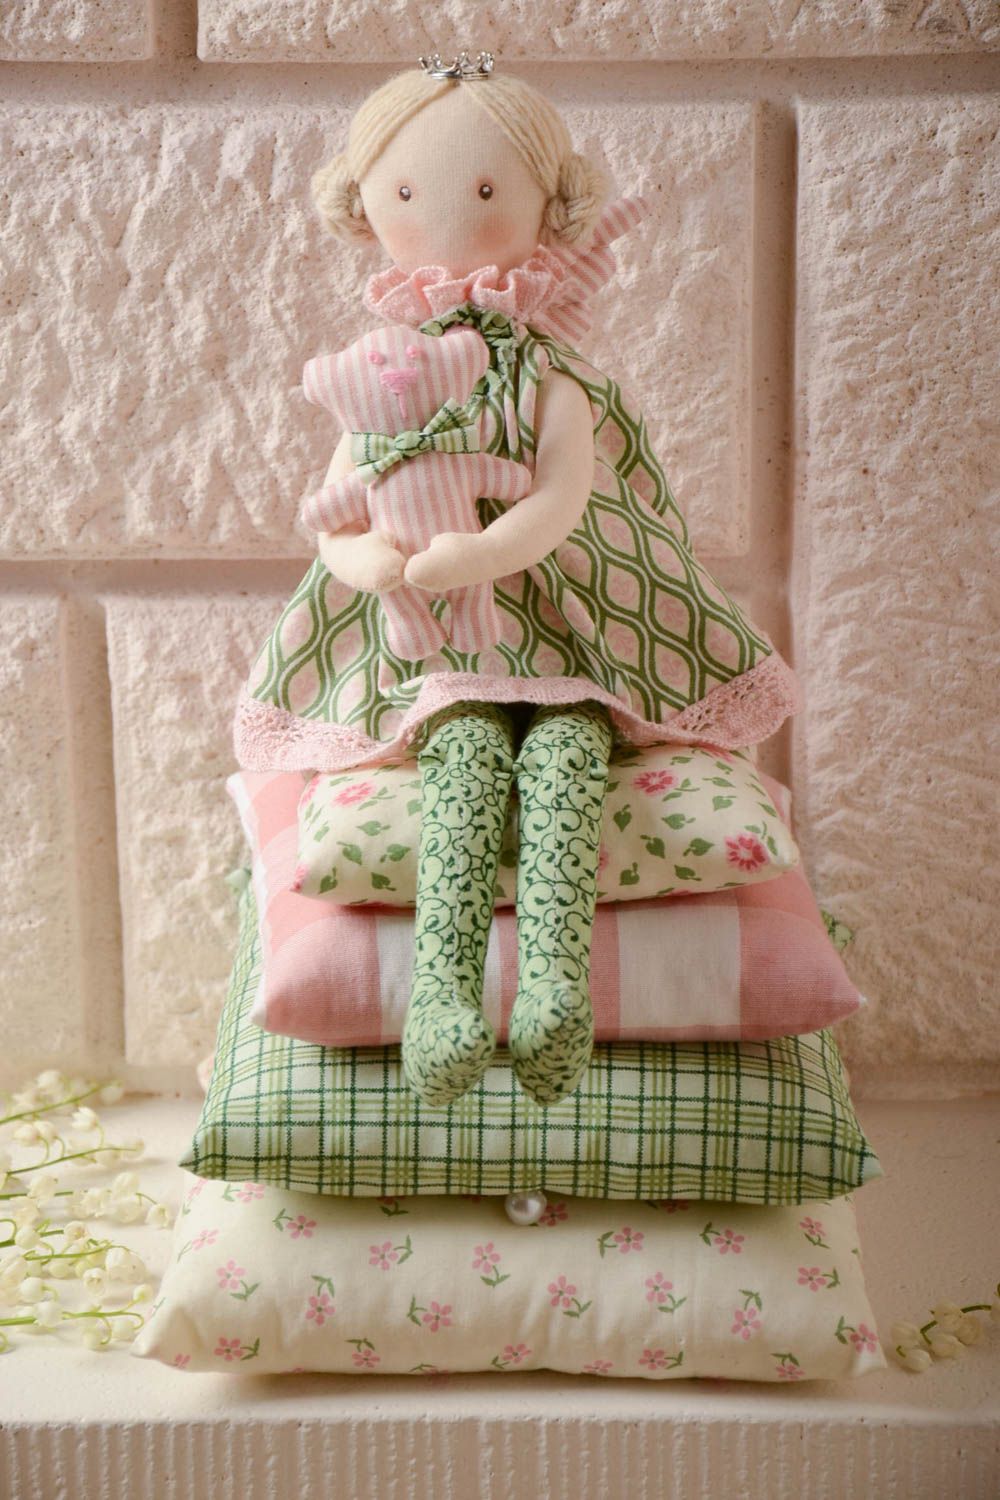 Авторская кукла из хлопка мягкая хэнд мэйд Девочка на подушках с мишкой в руках фото 1